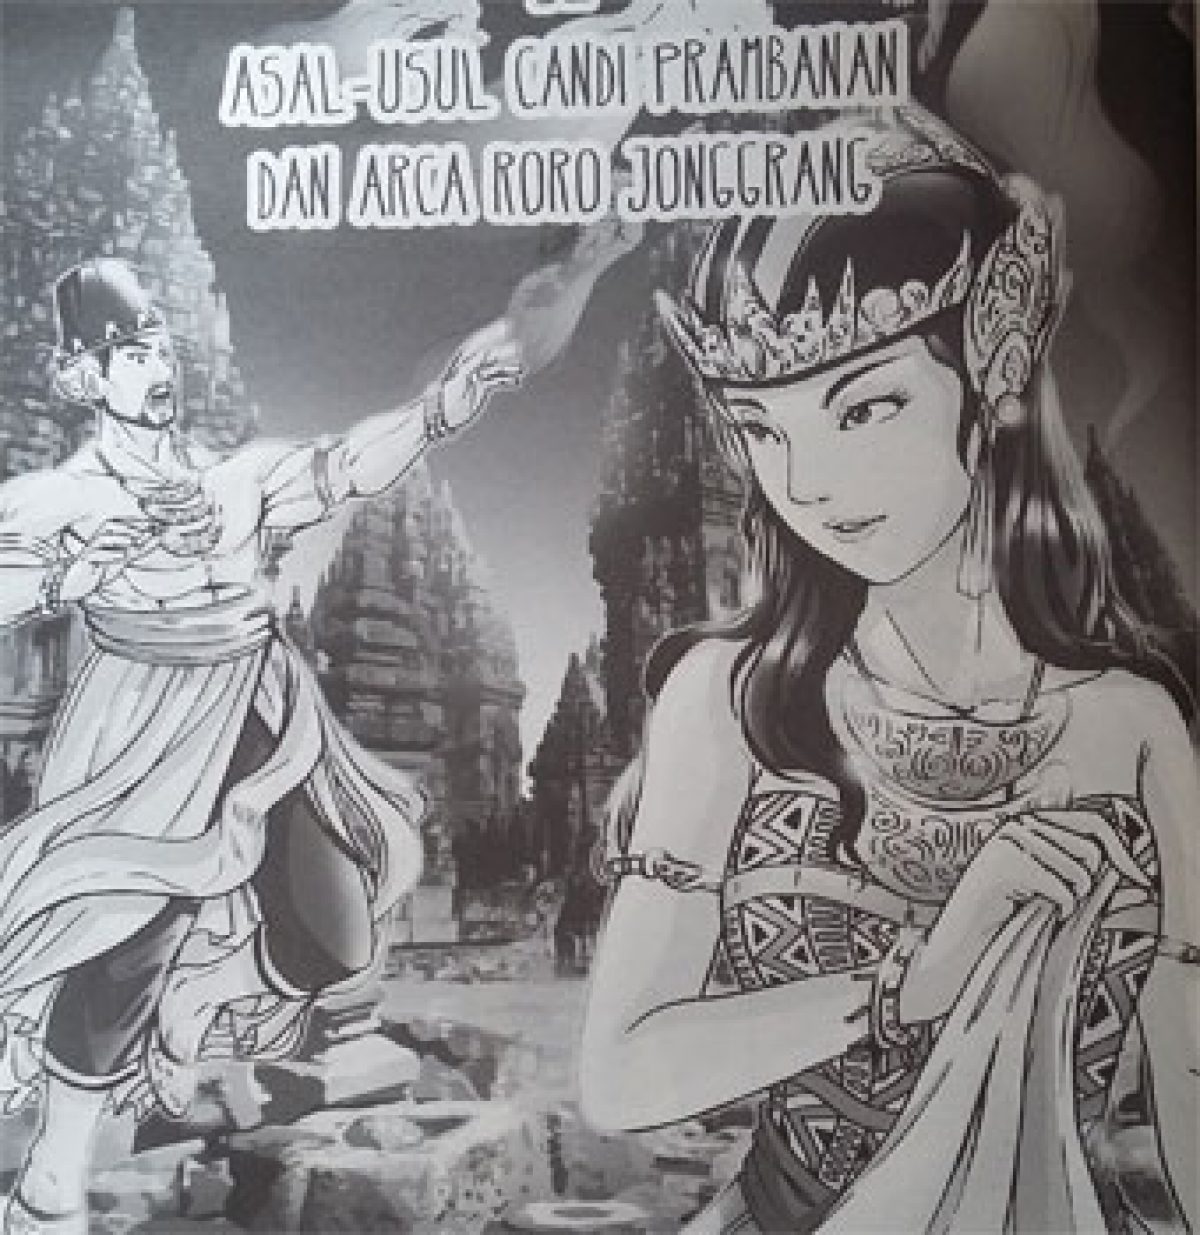 Cerita Roro Jonggrang Legenda Dari Jawa Tengah Dan Jogja